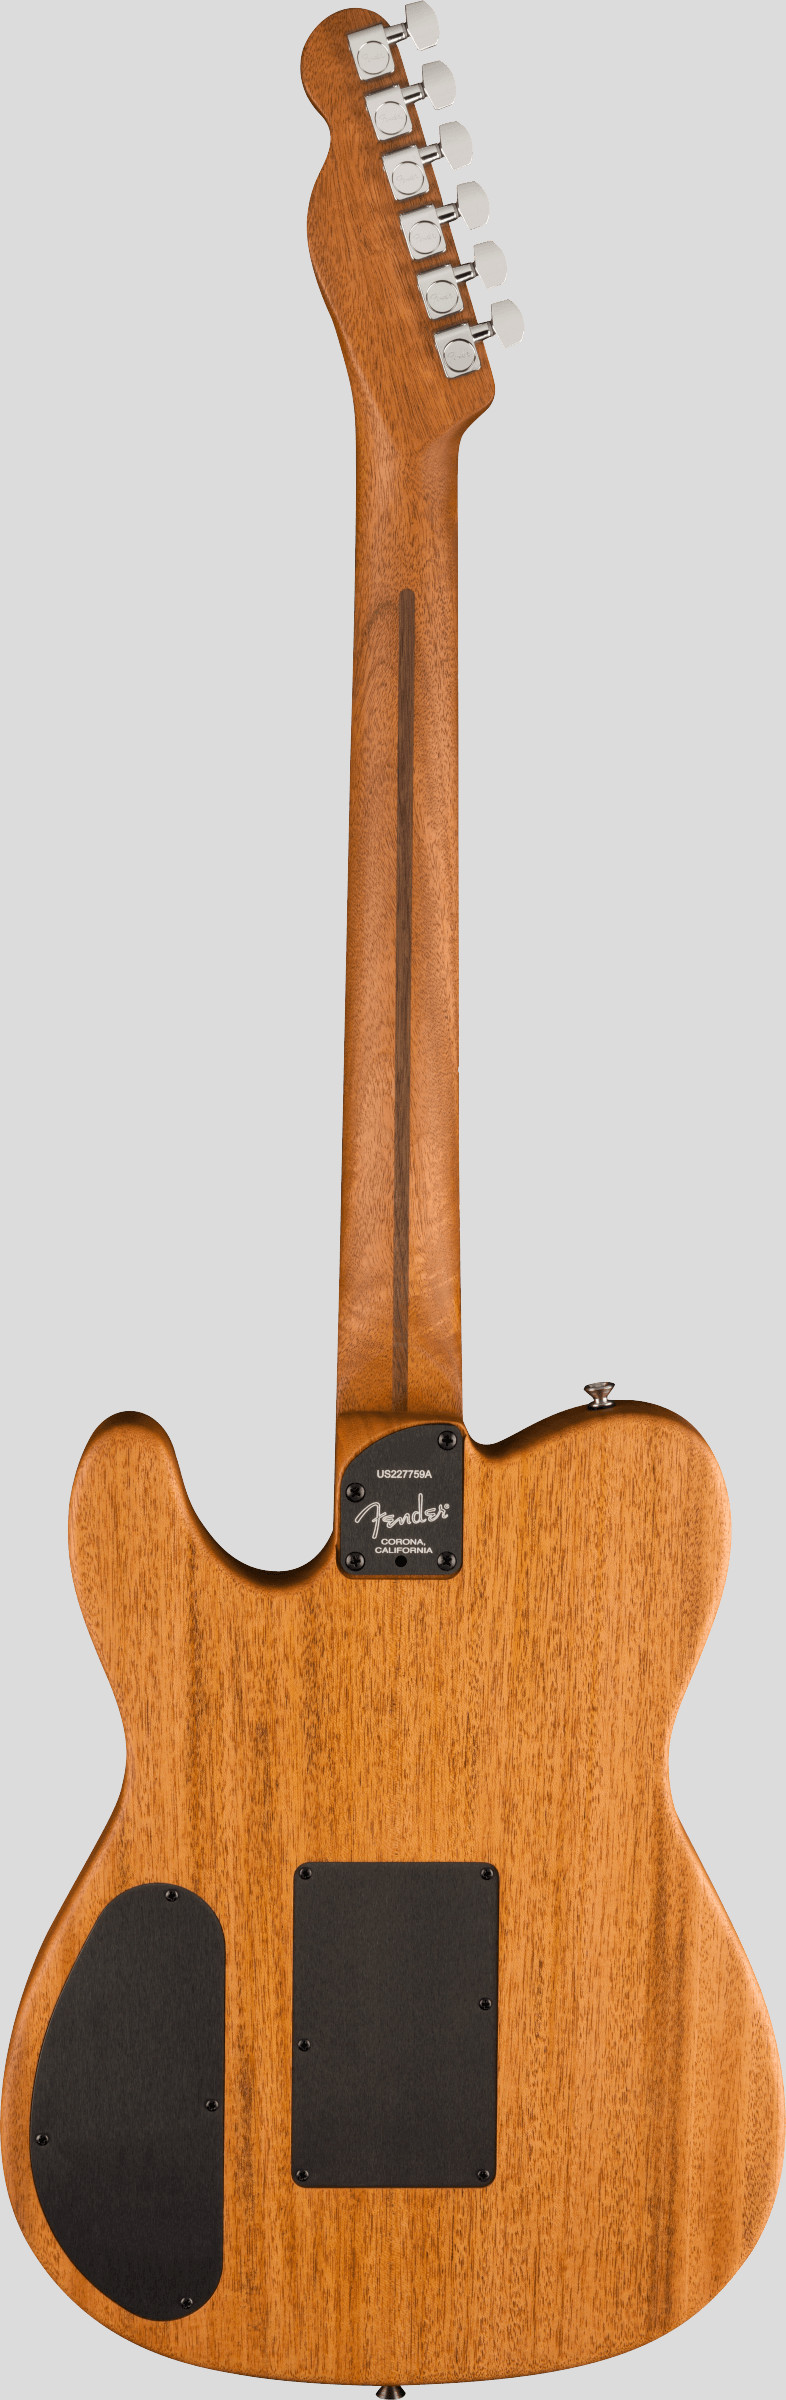 Fender American Acoustasonic Telecaster All-Mahogany Bourbon Burst 2